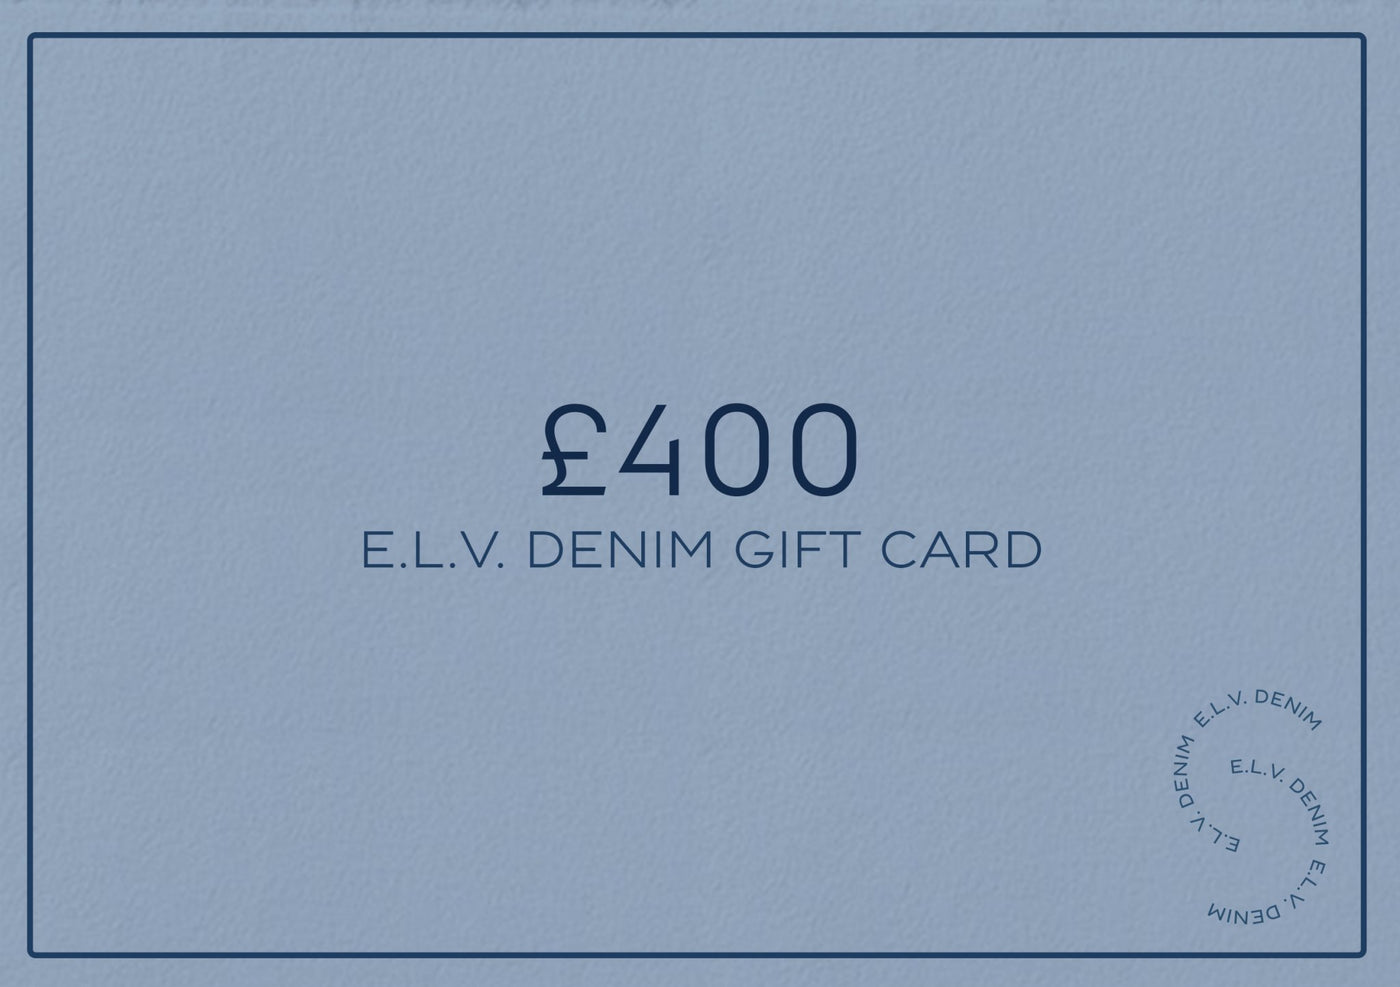 E.L.V. Denim Gift Card - E.L.V. Denim